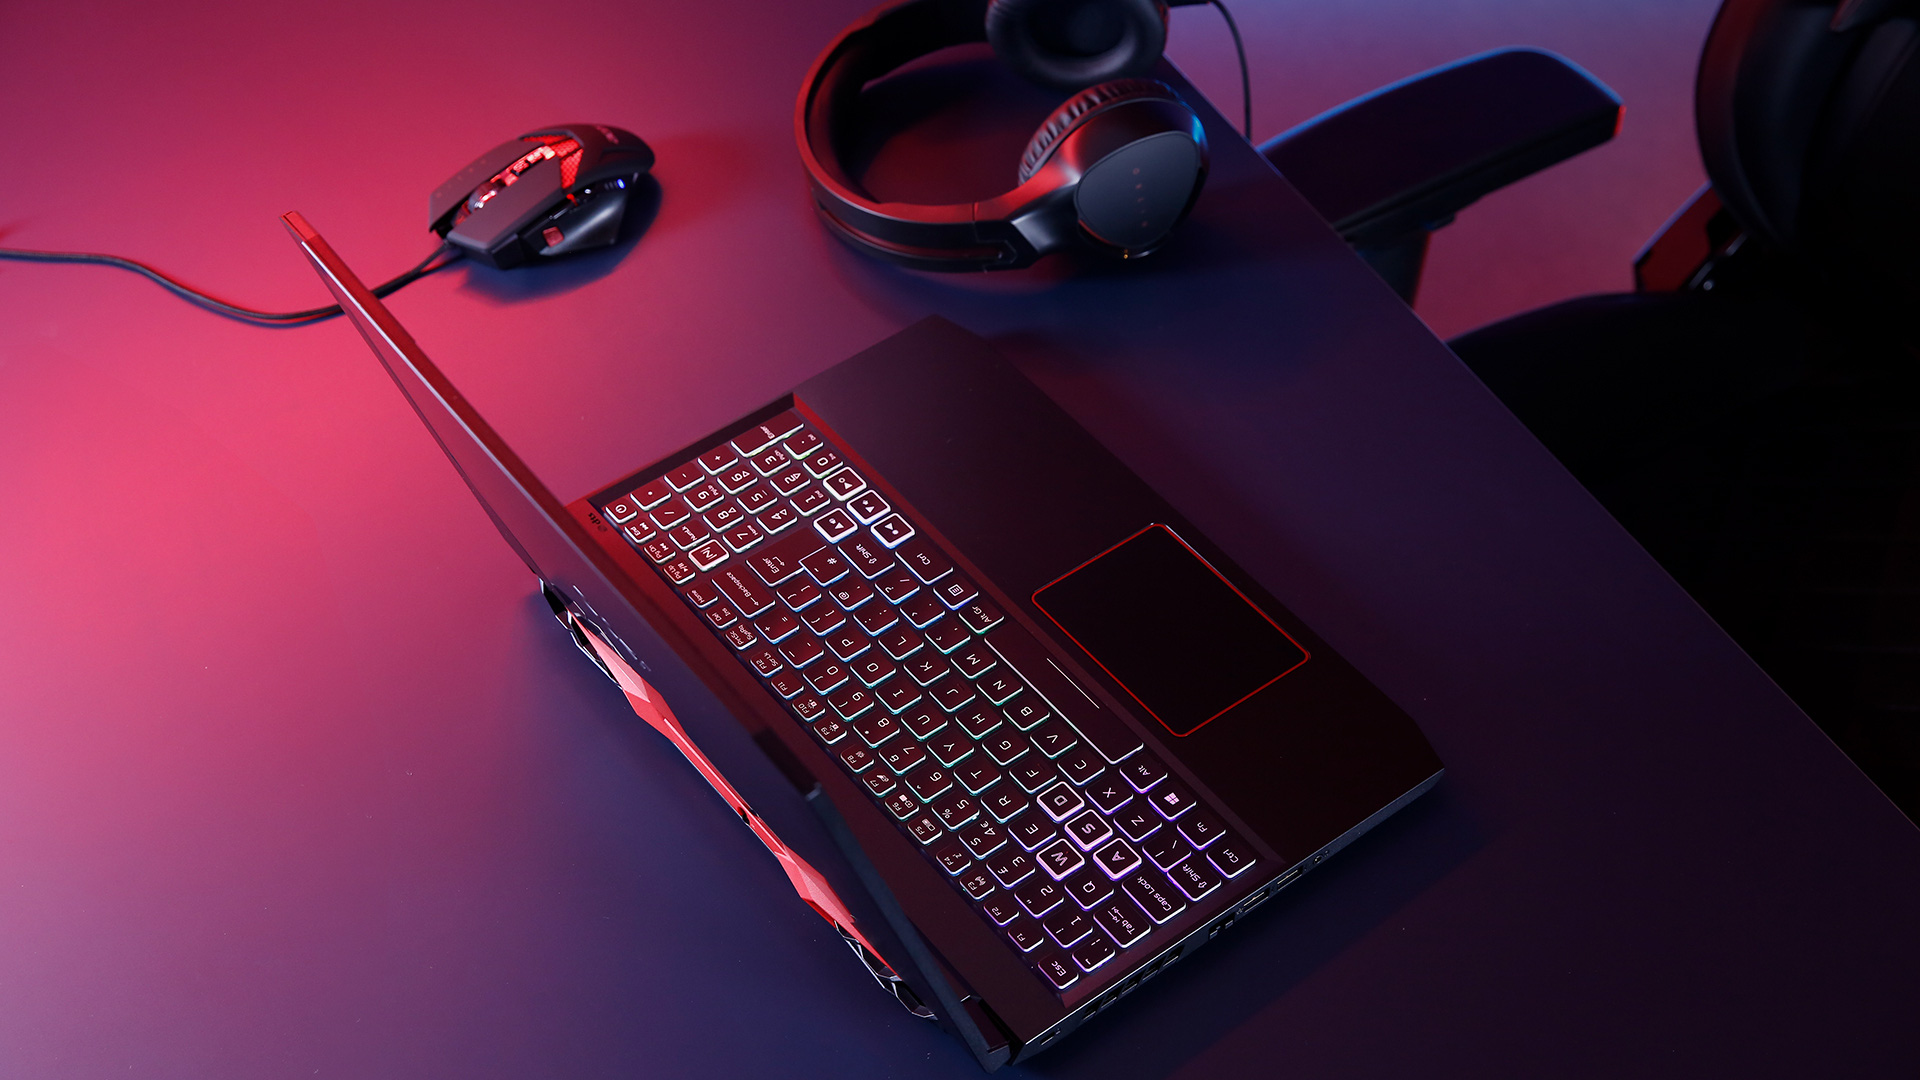 Với Acer Nitro 5 Gaming Laptop, bạn sẽ trải nghiệm được thế giới game một cách hoàn hảo nhất. Với hiệu năng đỉnh cao cùng thiết kế tinh tế, chiếc laptop này sẽ là đối tác hoàn hảo cho các game thủ đích thực.